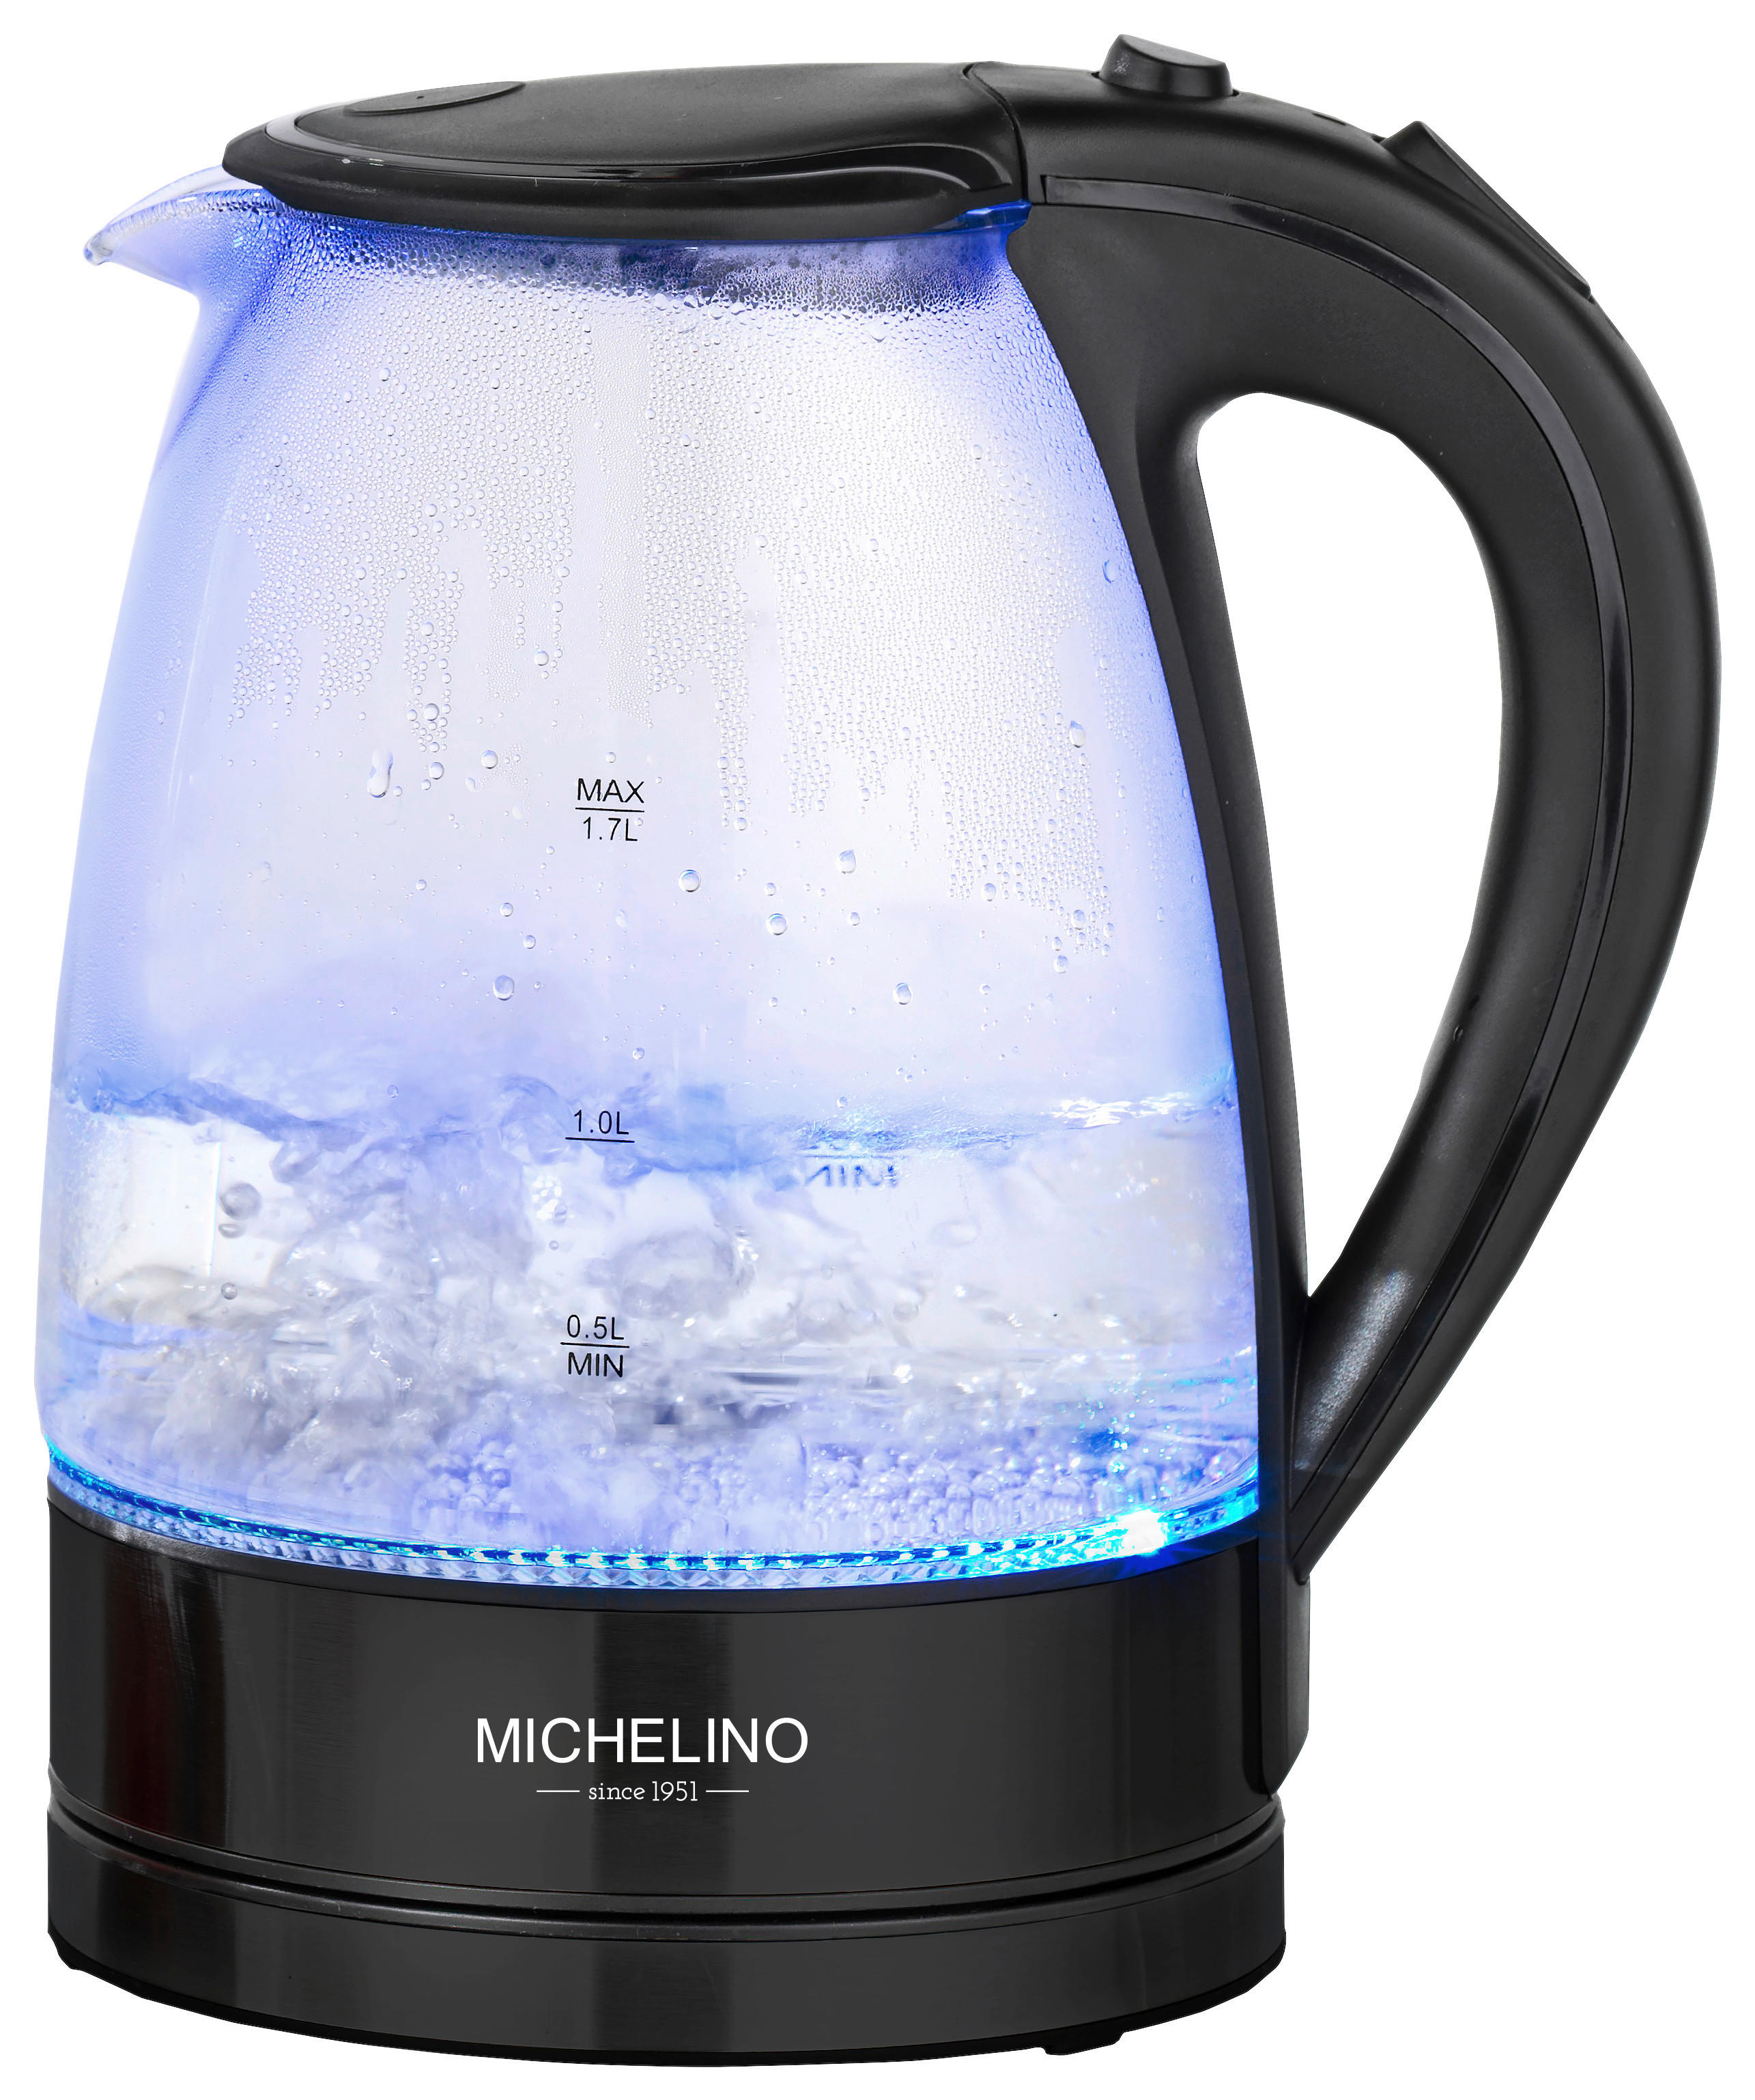 MICHELINO Wasserkocher 74279 Michelino - schwarz